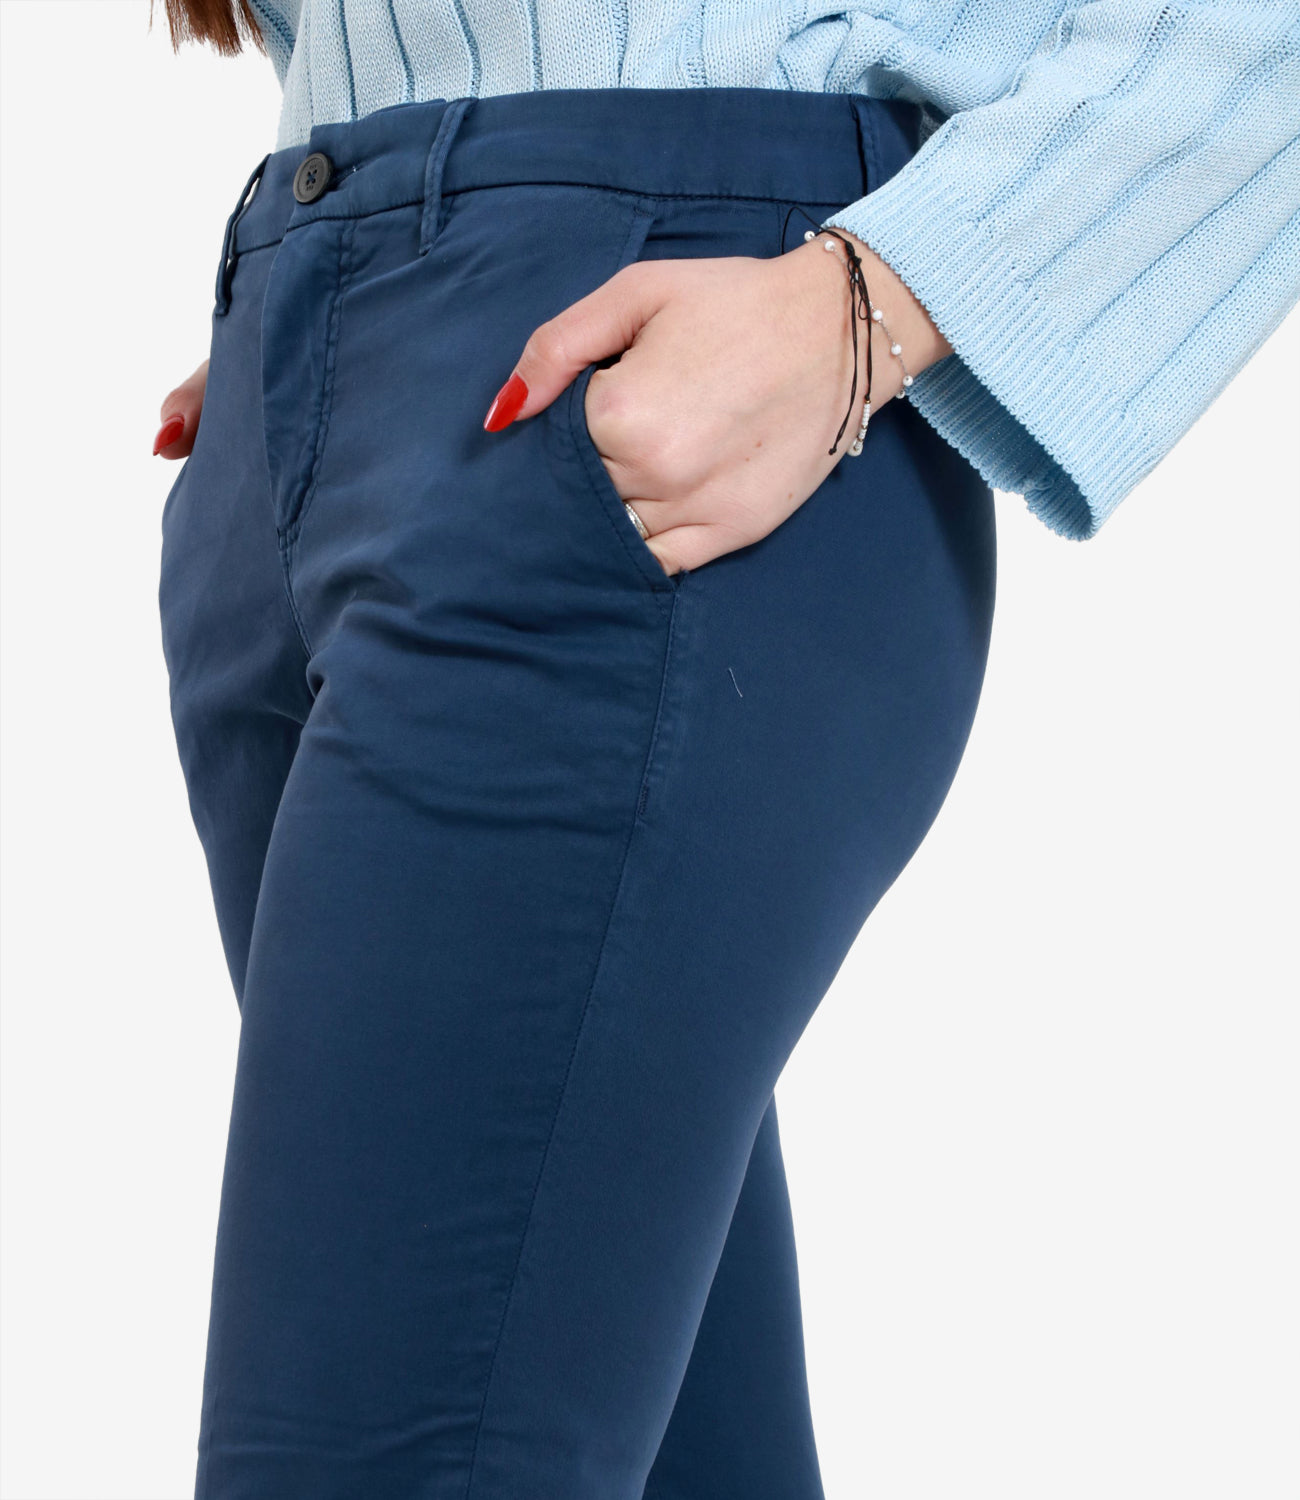 Fay | Pantalone Blu Navy